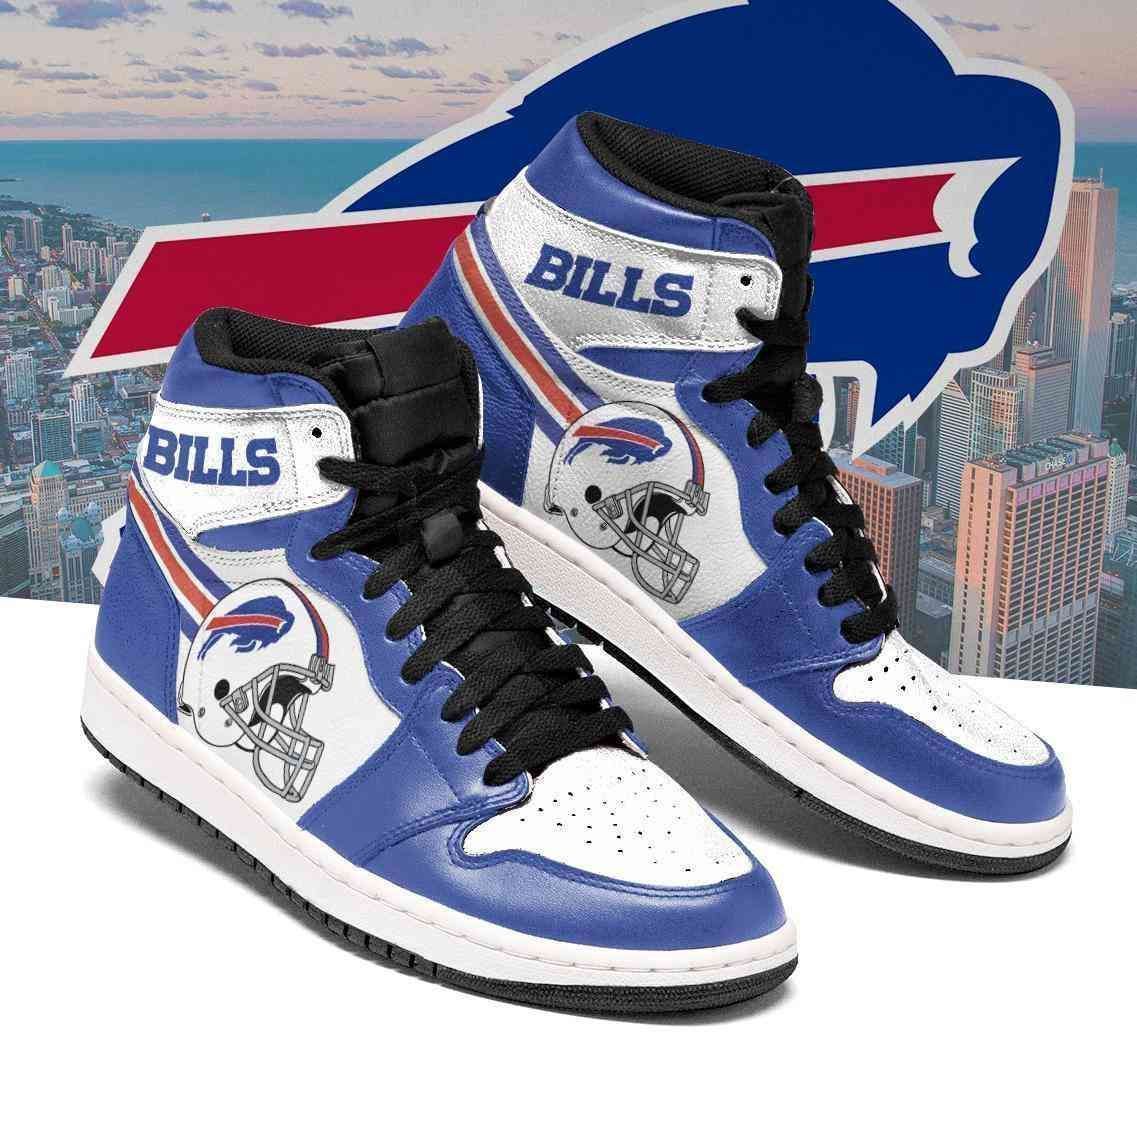 Buffalo Bills Nfl Football Air Jordan Shoes Sport Sneakers